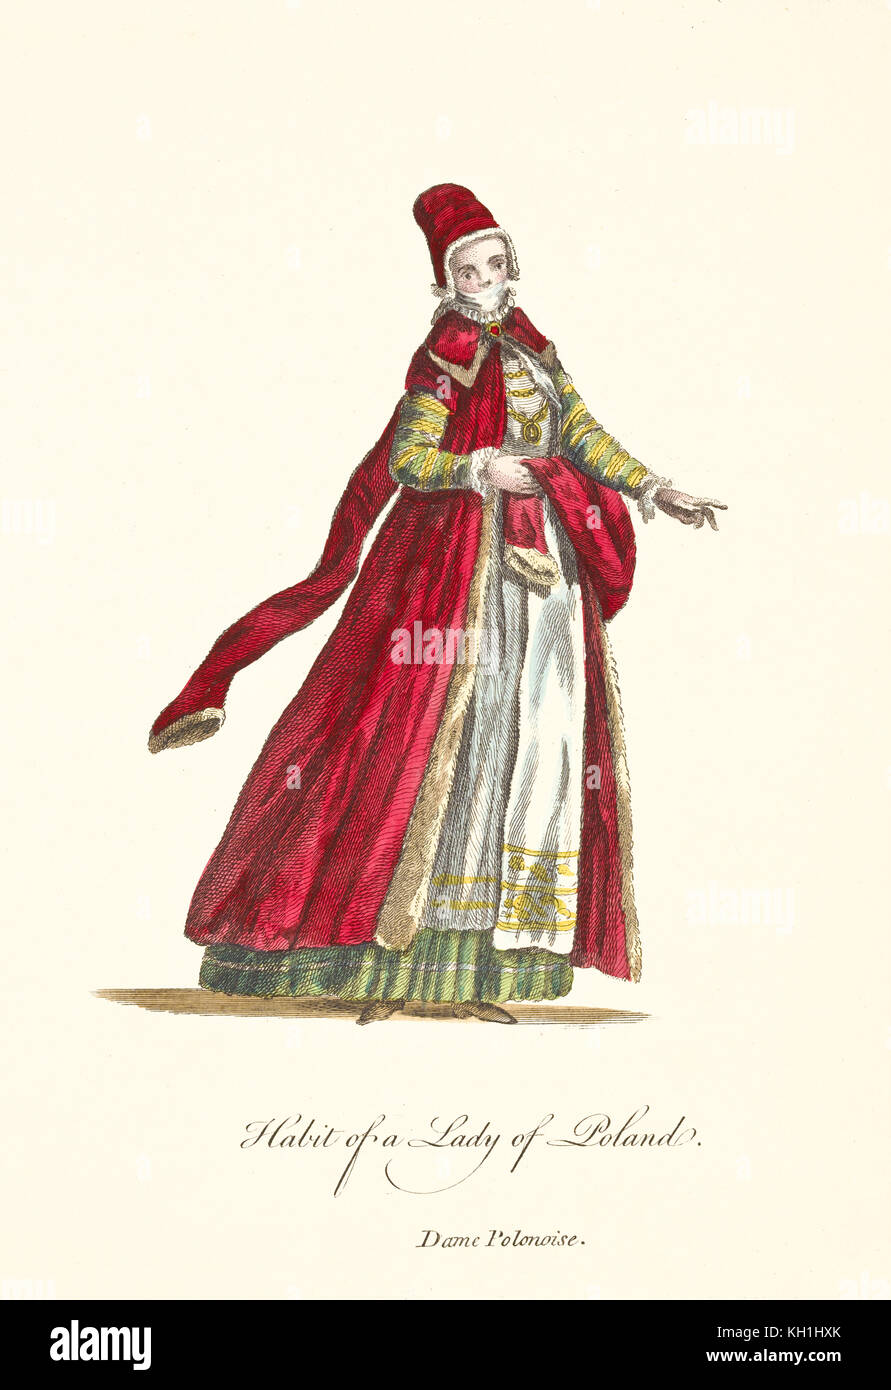 Vieille Dame polonaise de illustratiion en vêtements traditionnels. Par J.M. Vien, publ. T. Jefferys, Londres, 1757-1772 Banque D'Images